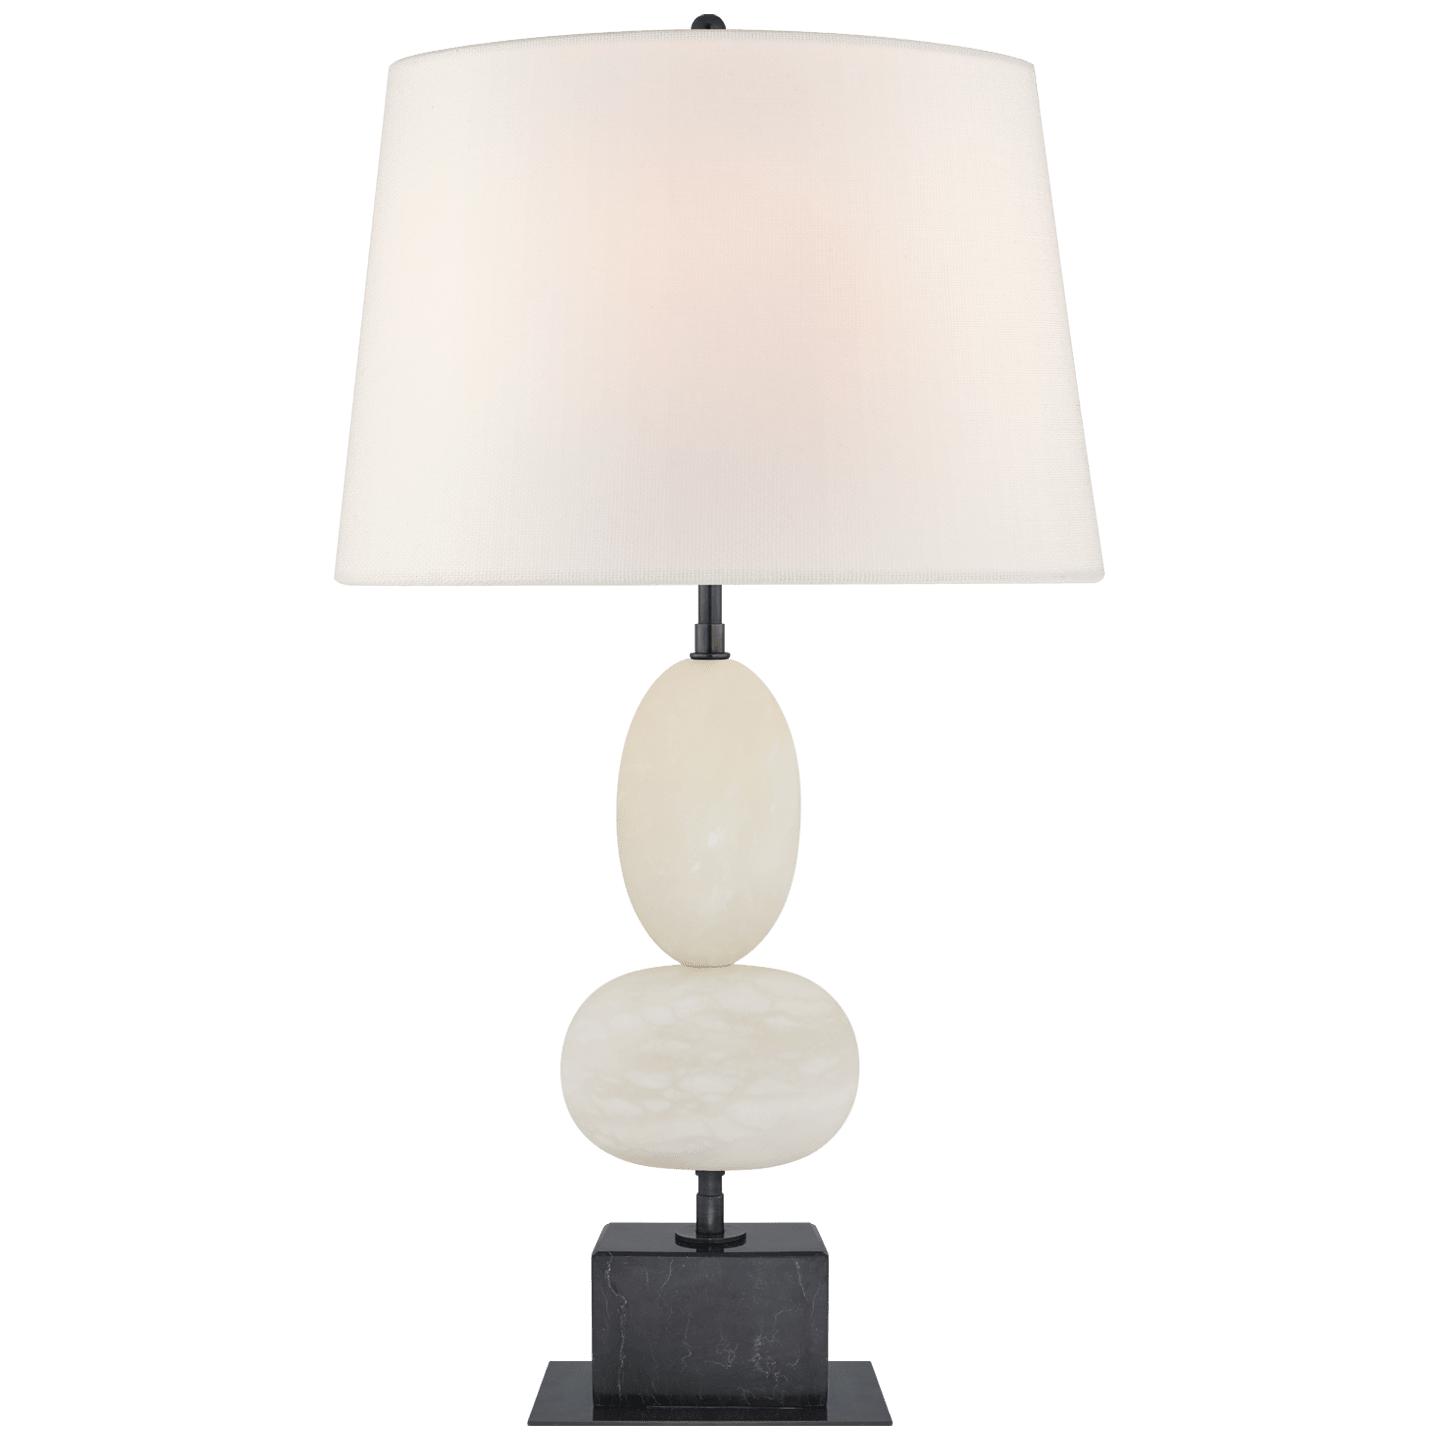 Купить Настольная лампа Dani Medium Table Lamp в интернет-магазине roooms.ru